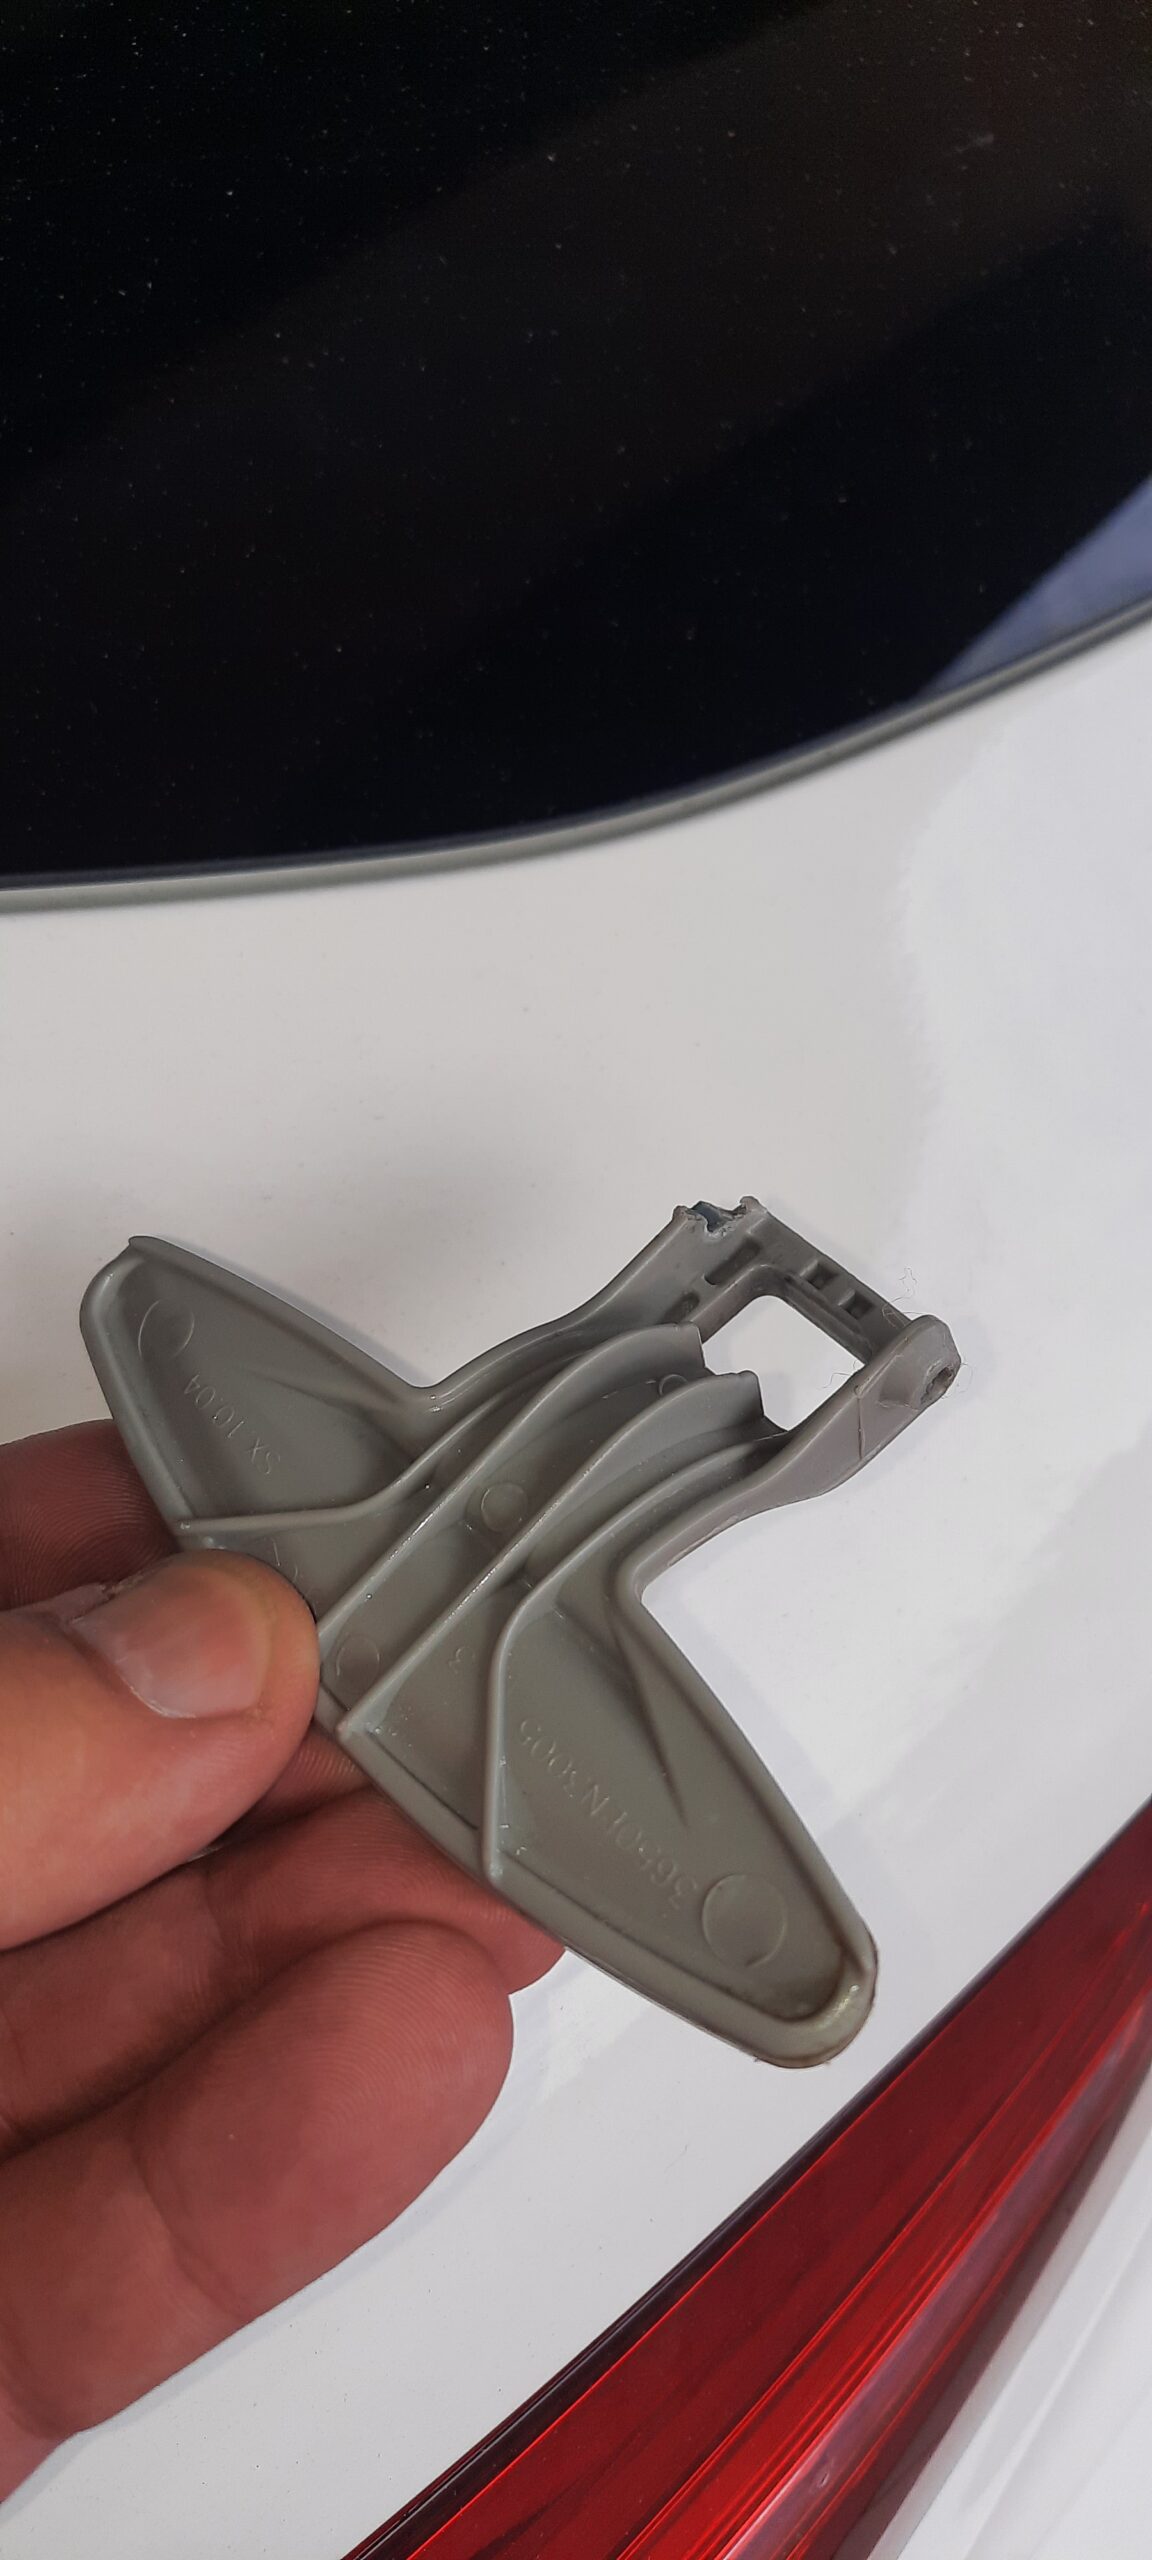 Drzwi pralki LG F12B8NDWA nie otwierają się - wymiana uchwytu na nowy